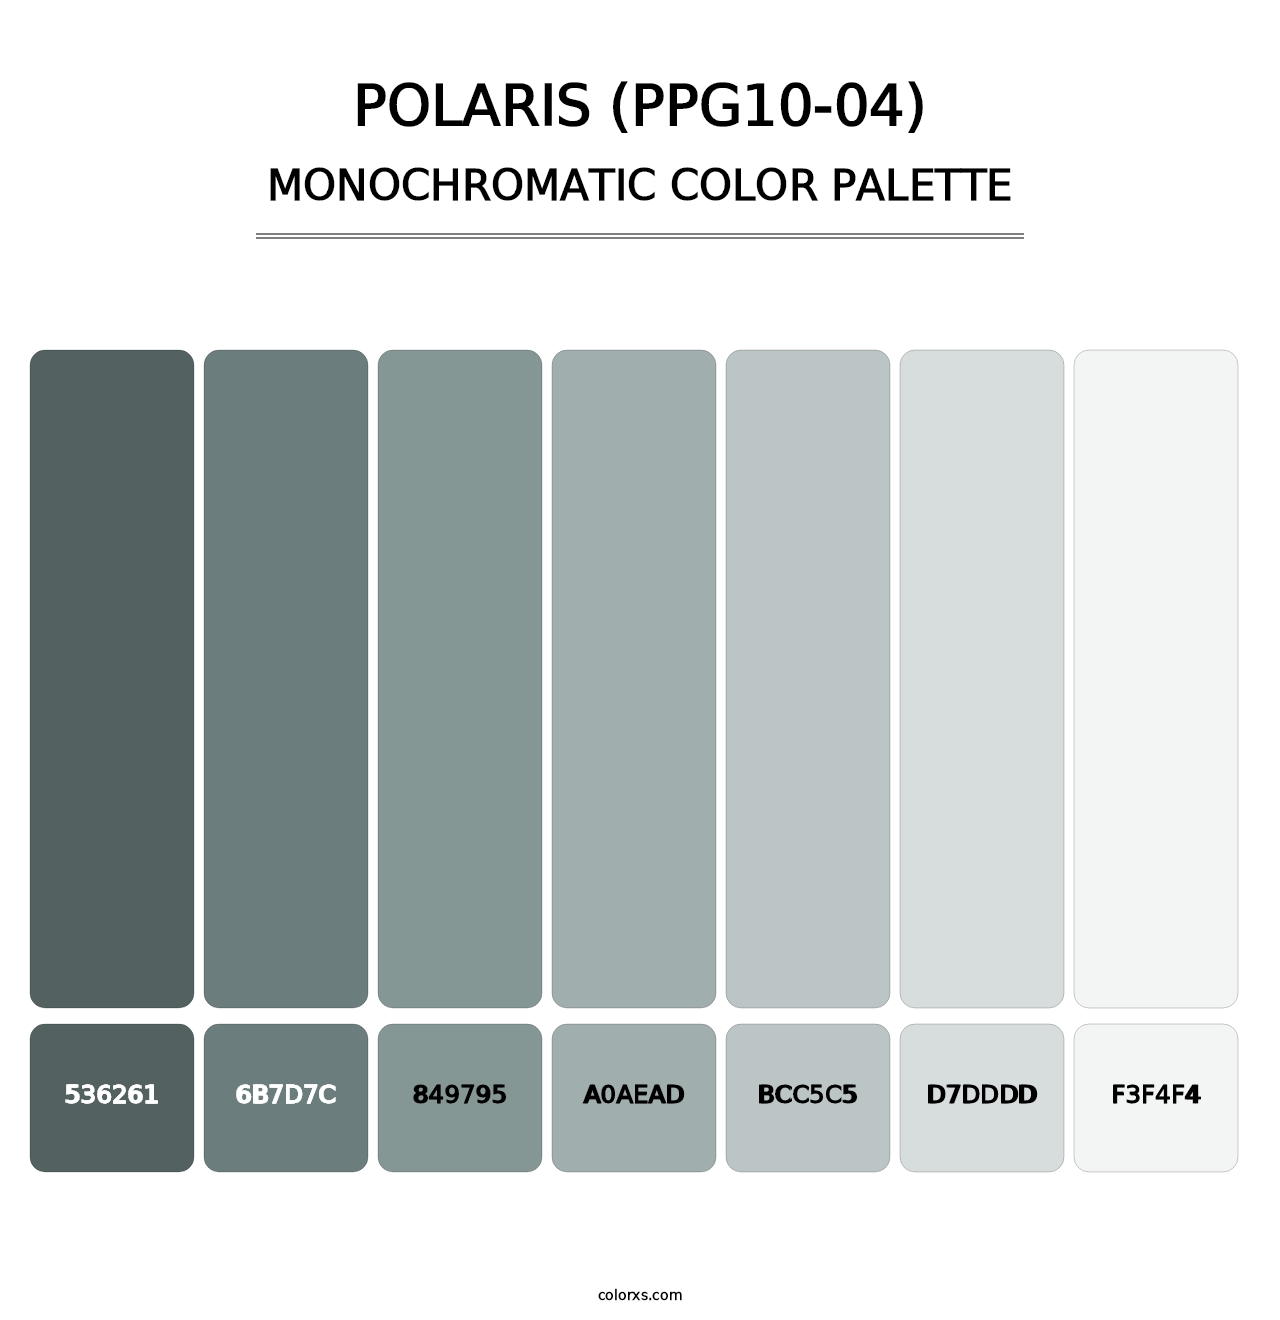 Polaris (PPG10-04) - Monochromatic Color Palette